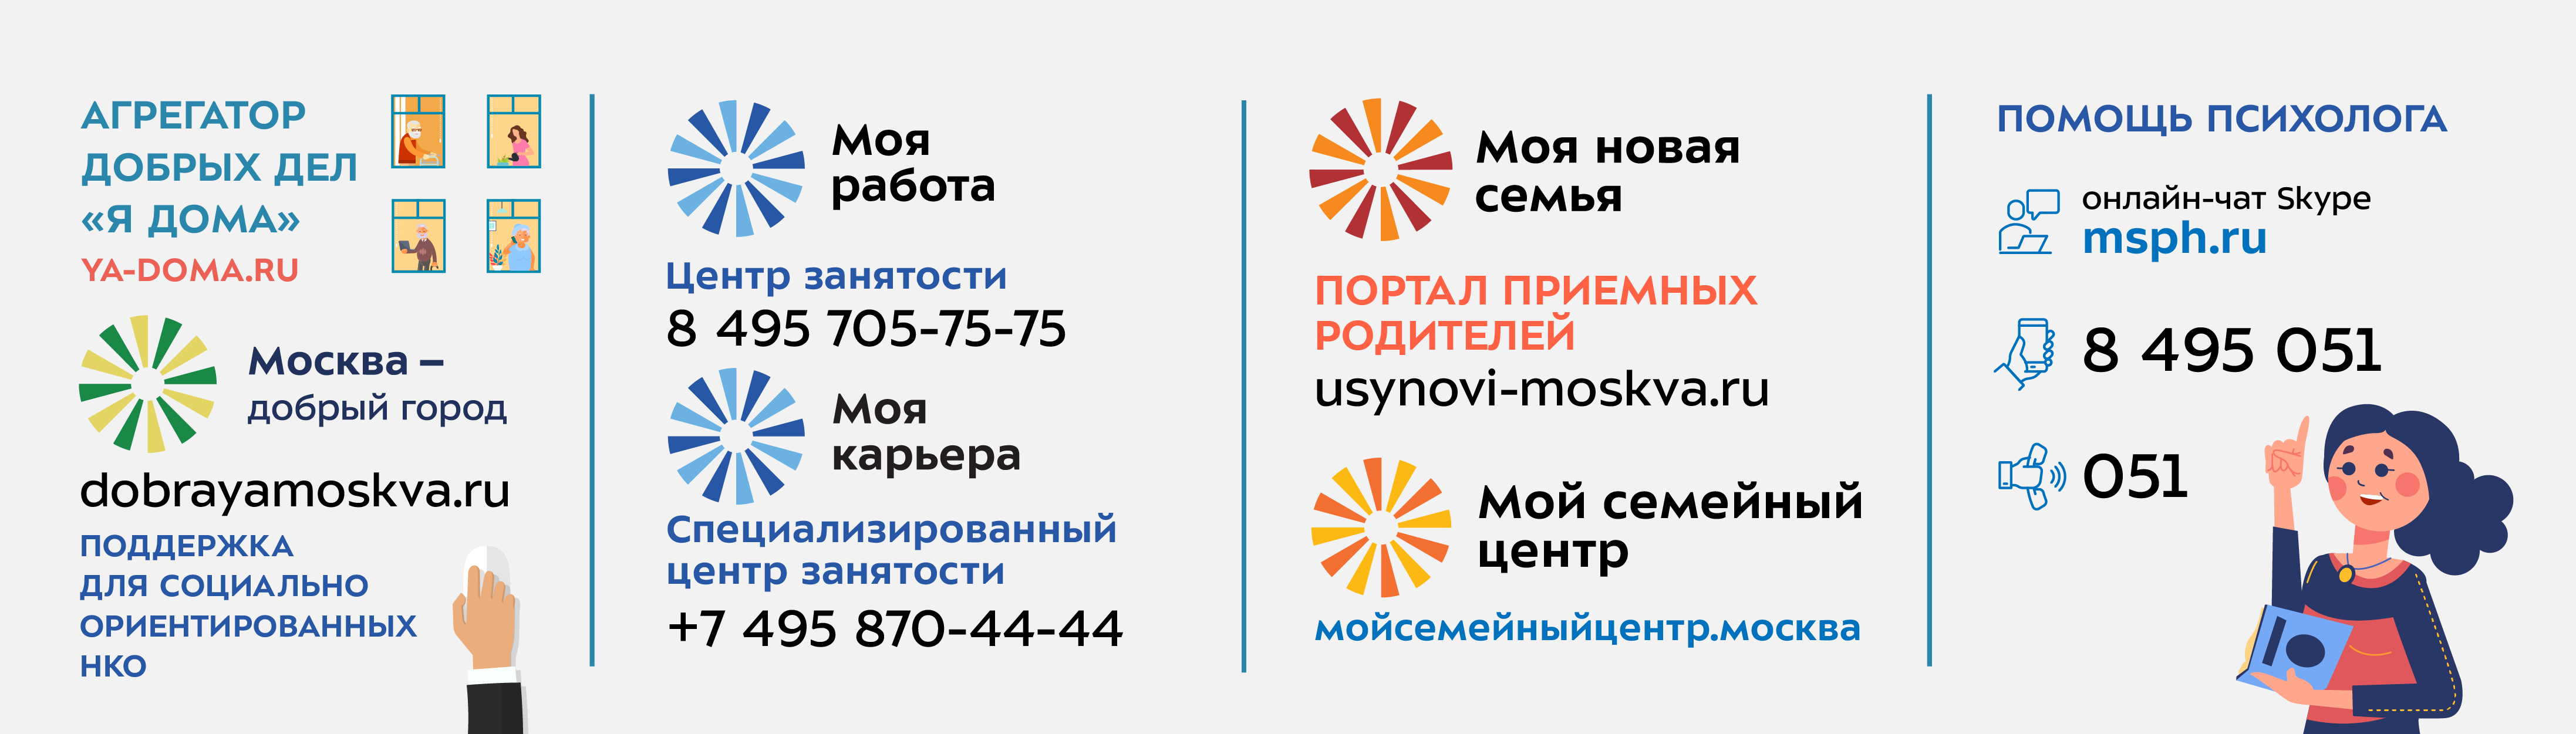 Баннер с контактной информацией о социальной поддержке москвичей